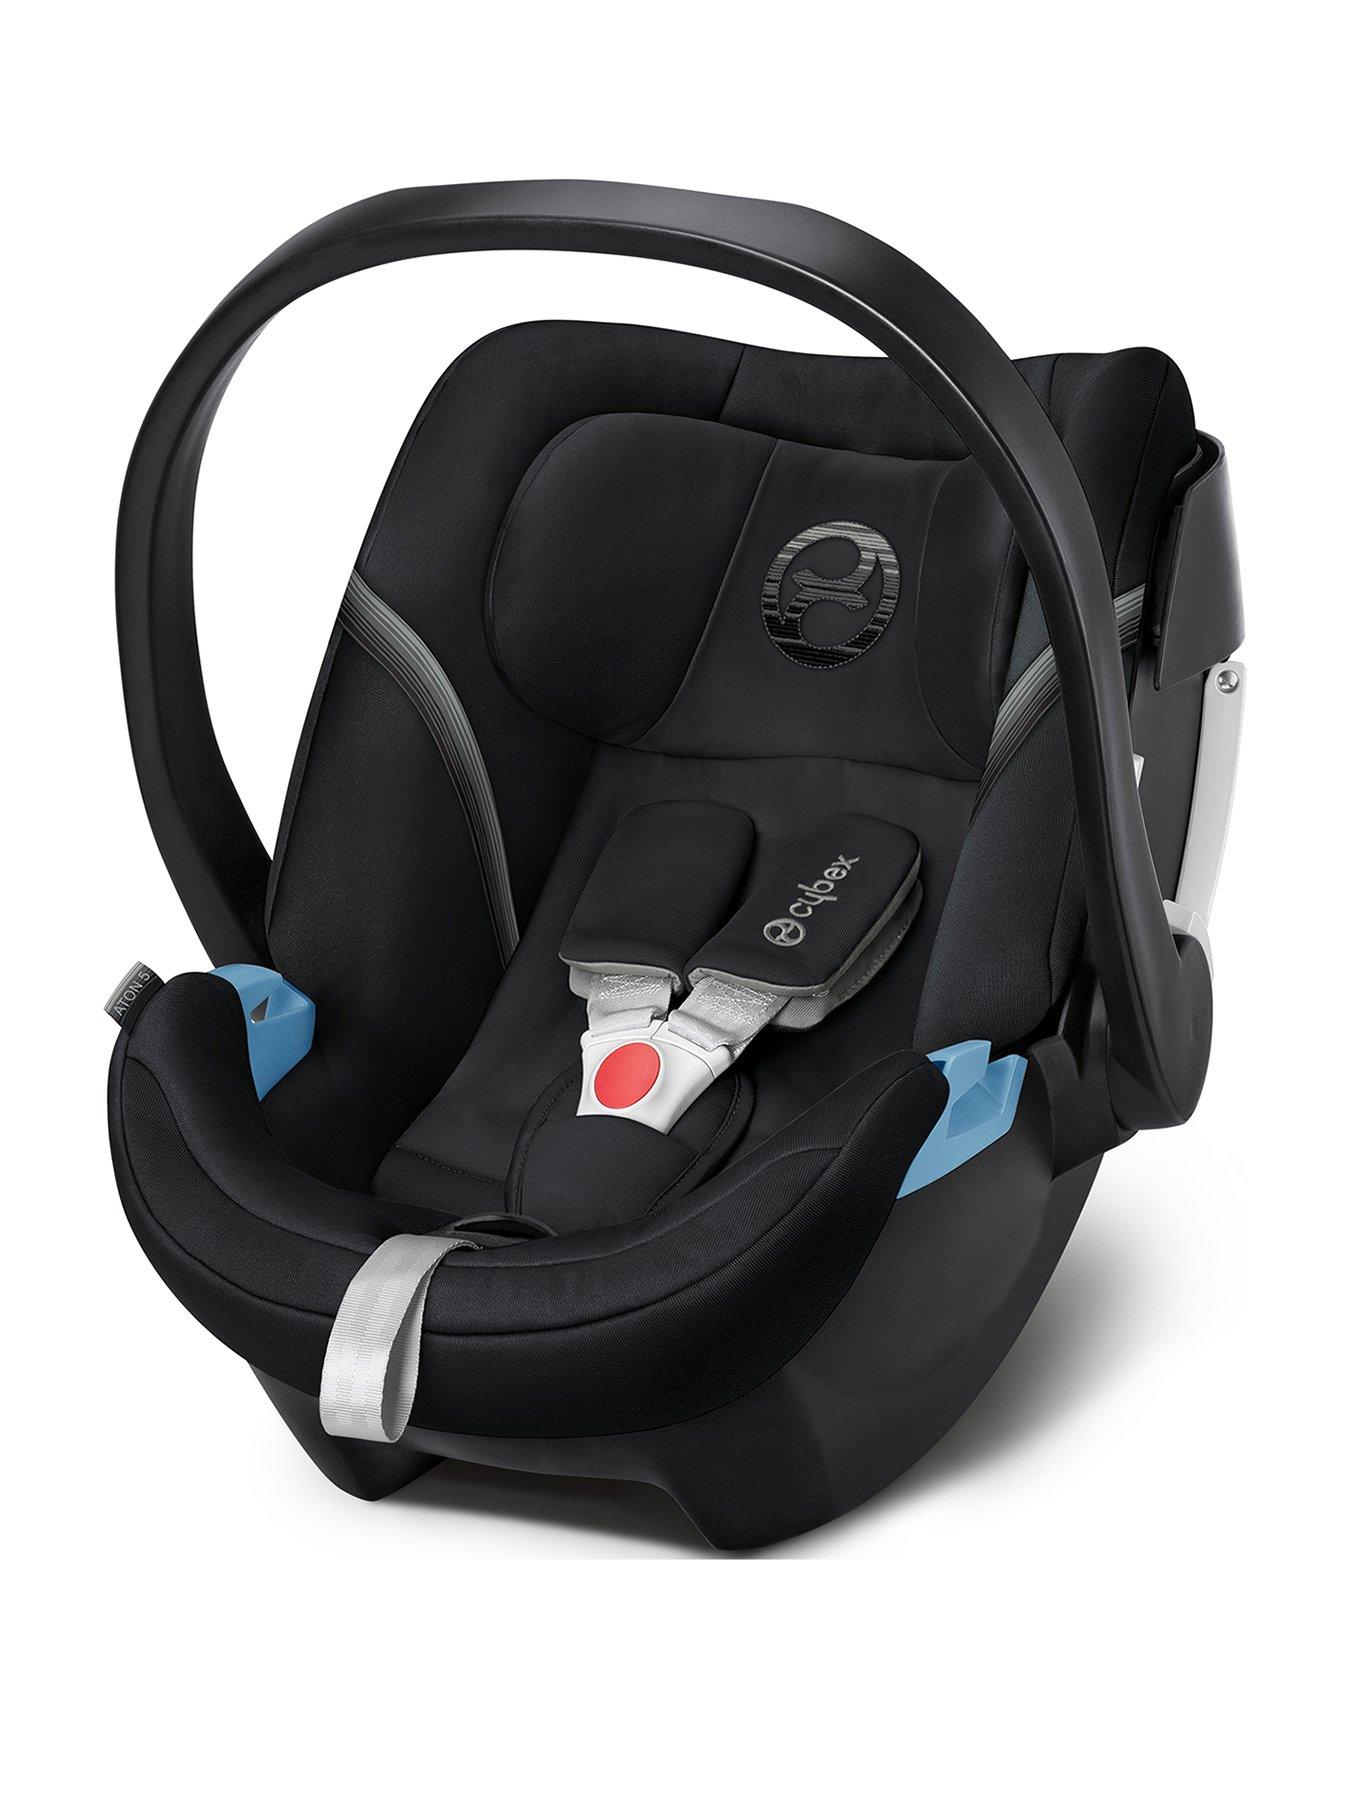 mamas and papas sola 2 car seat adaptors